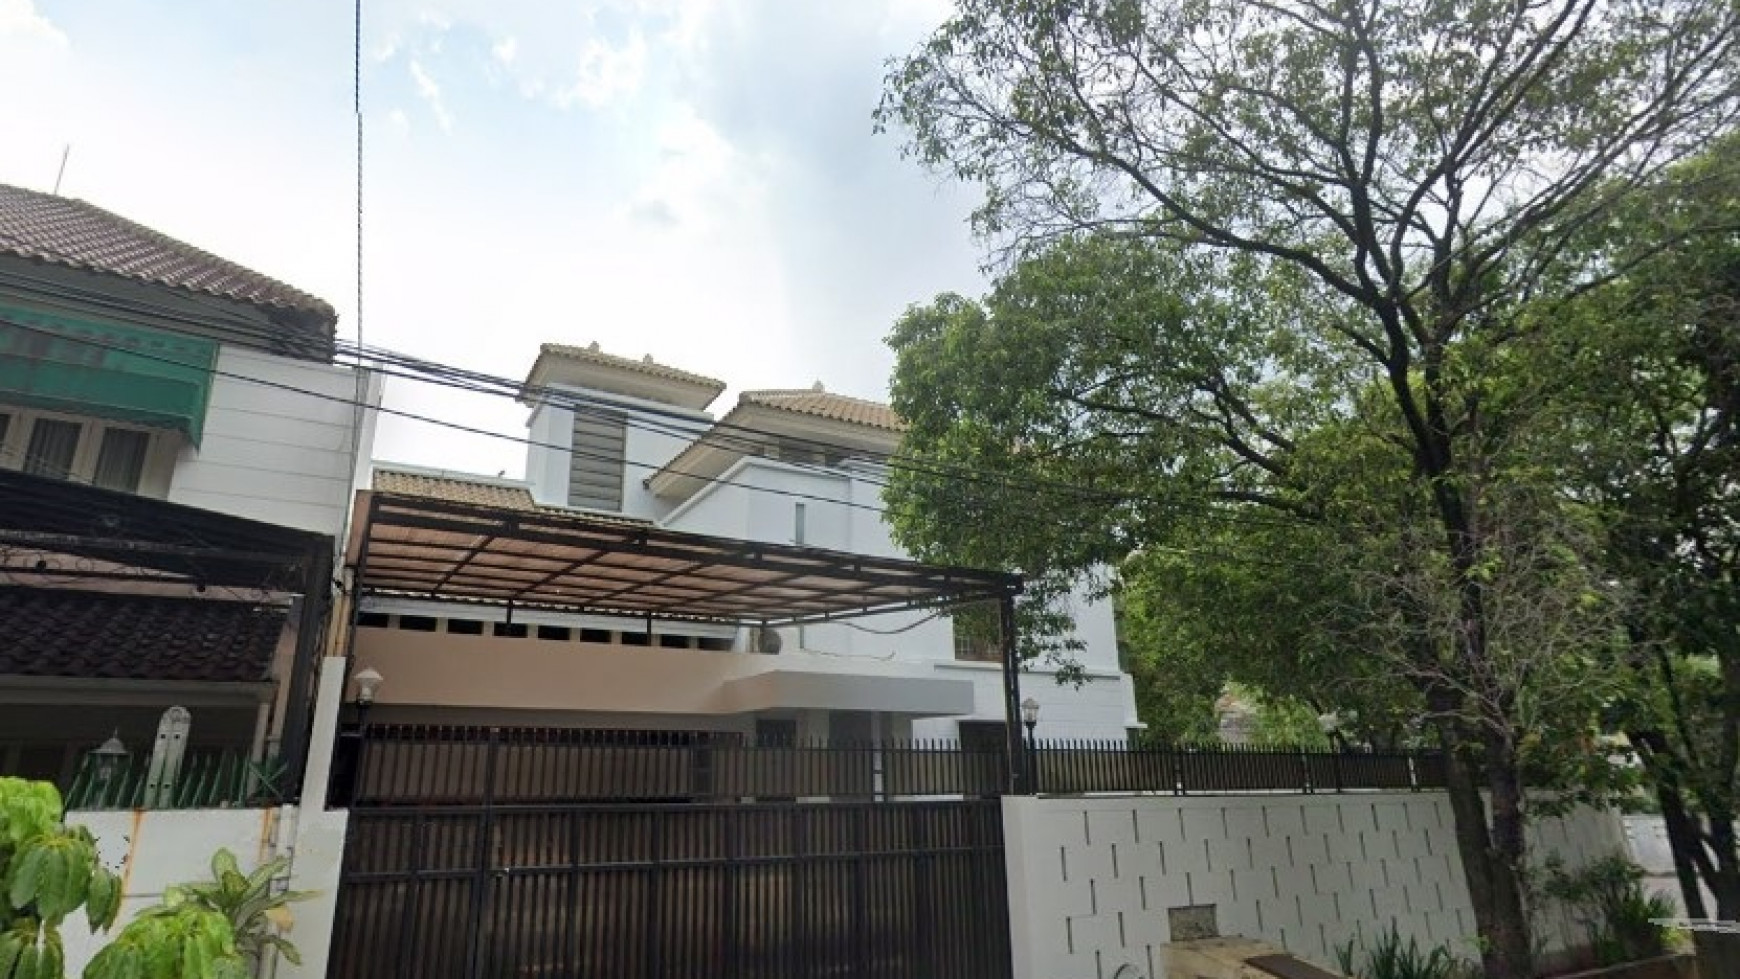 Rumah bagus siap huni di lokasi elit, Blok M Kebayoran Baru - Jakarta Selatan